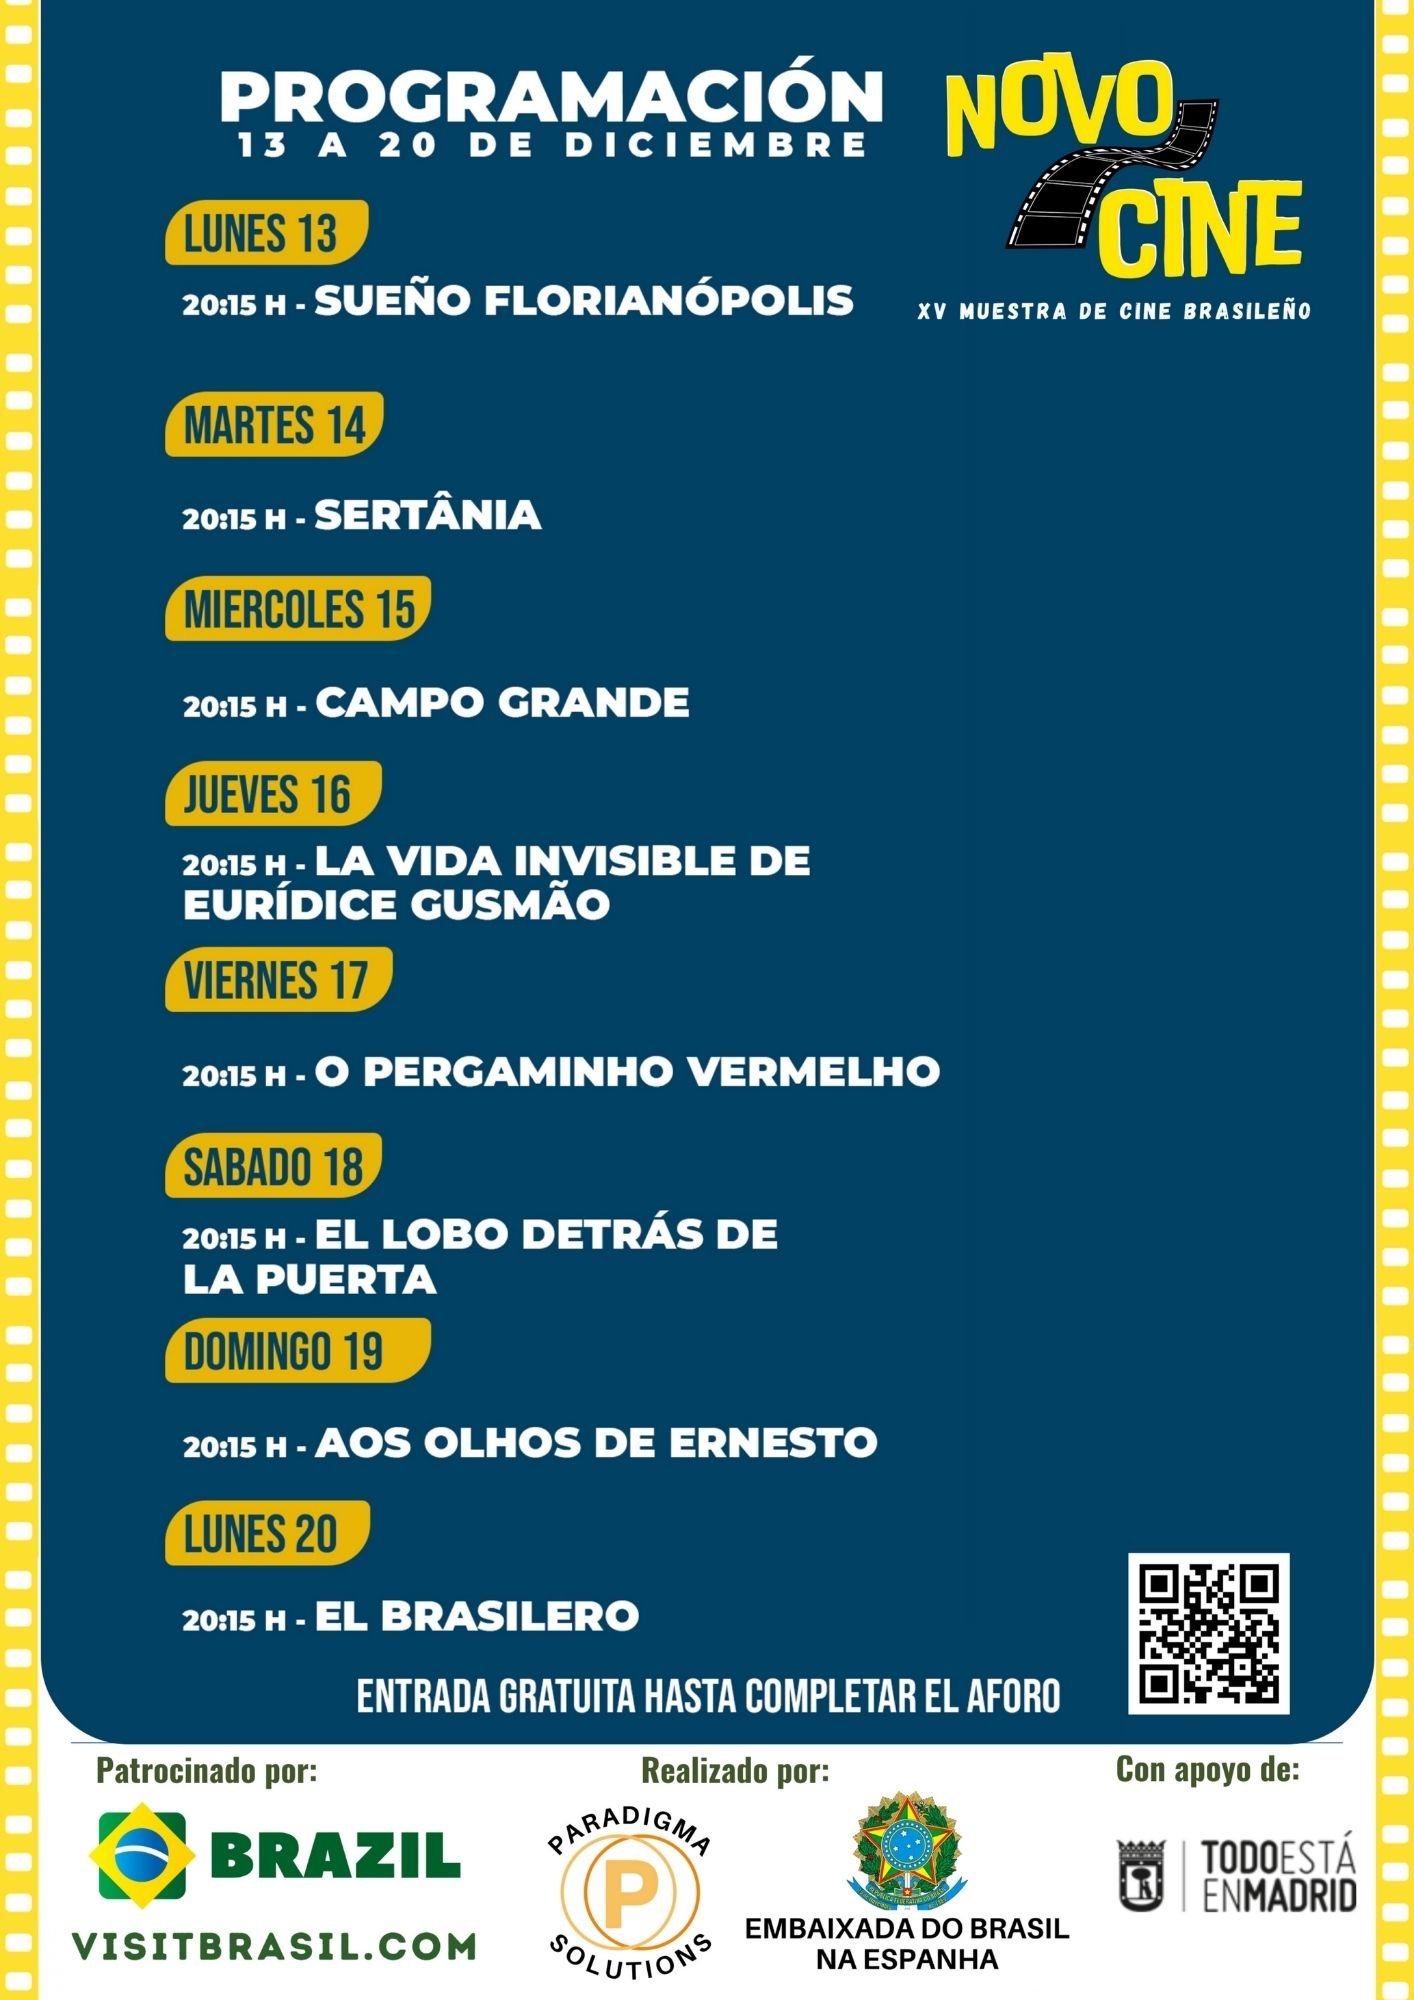 La Embajada de Brasil en España acoge una exposición de los XV Novos - Figura 3